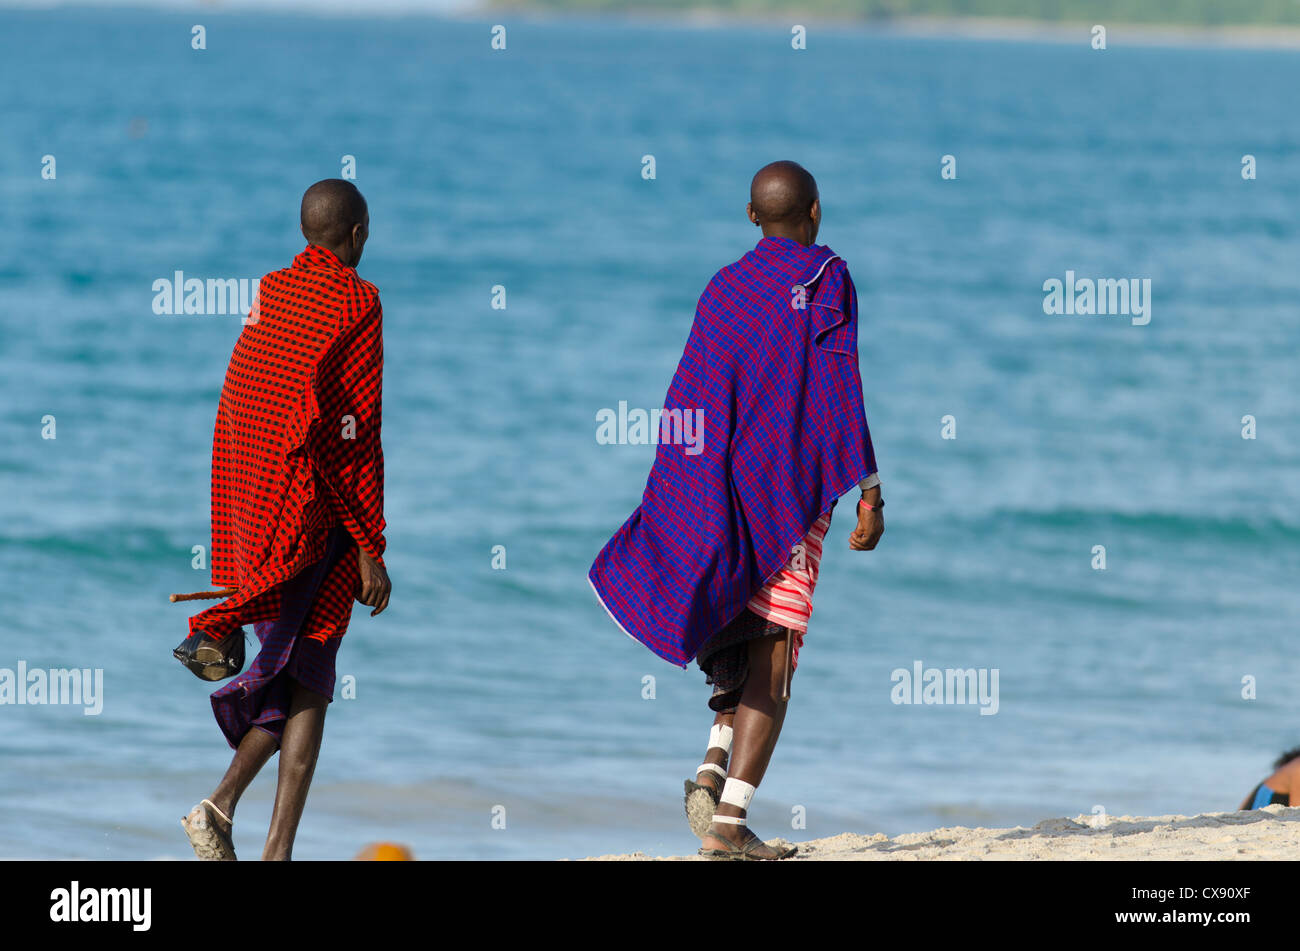 Maasai men on the beach Stock Photo